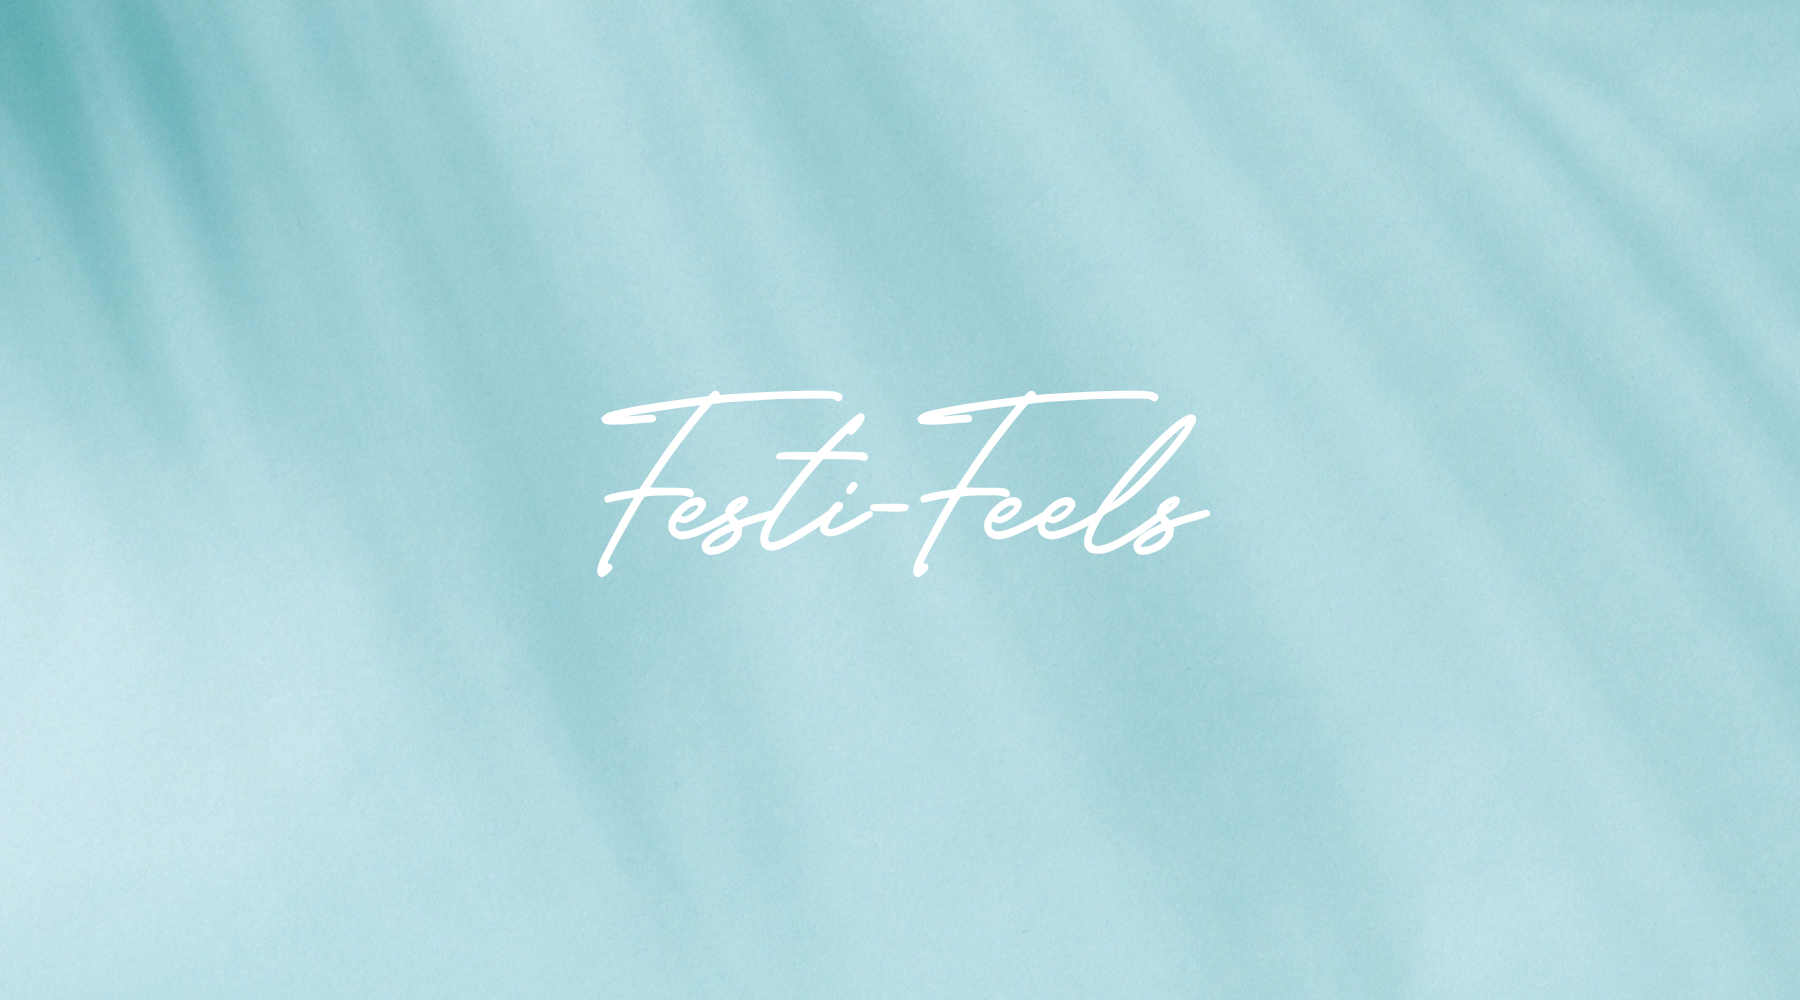 It’s all about Festi-Feels